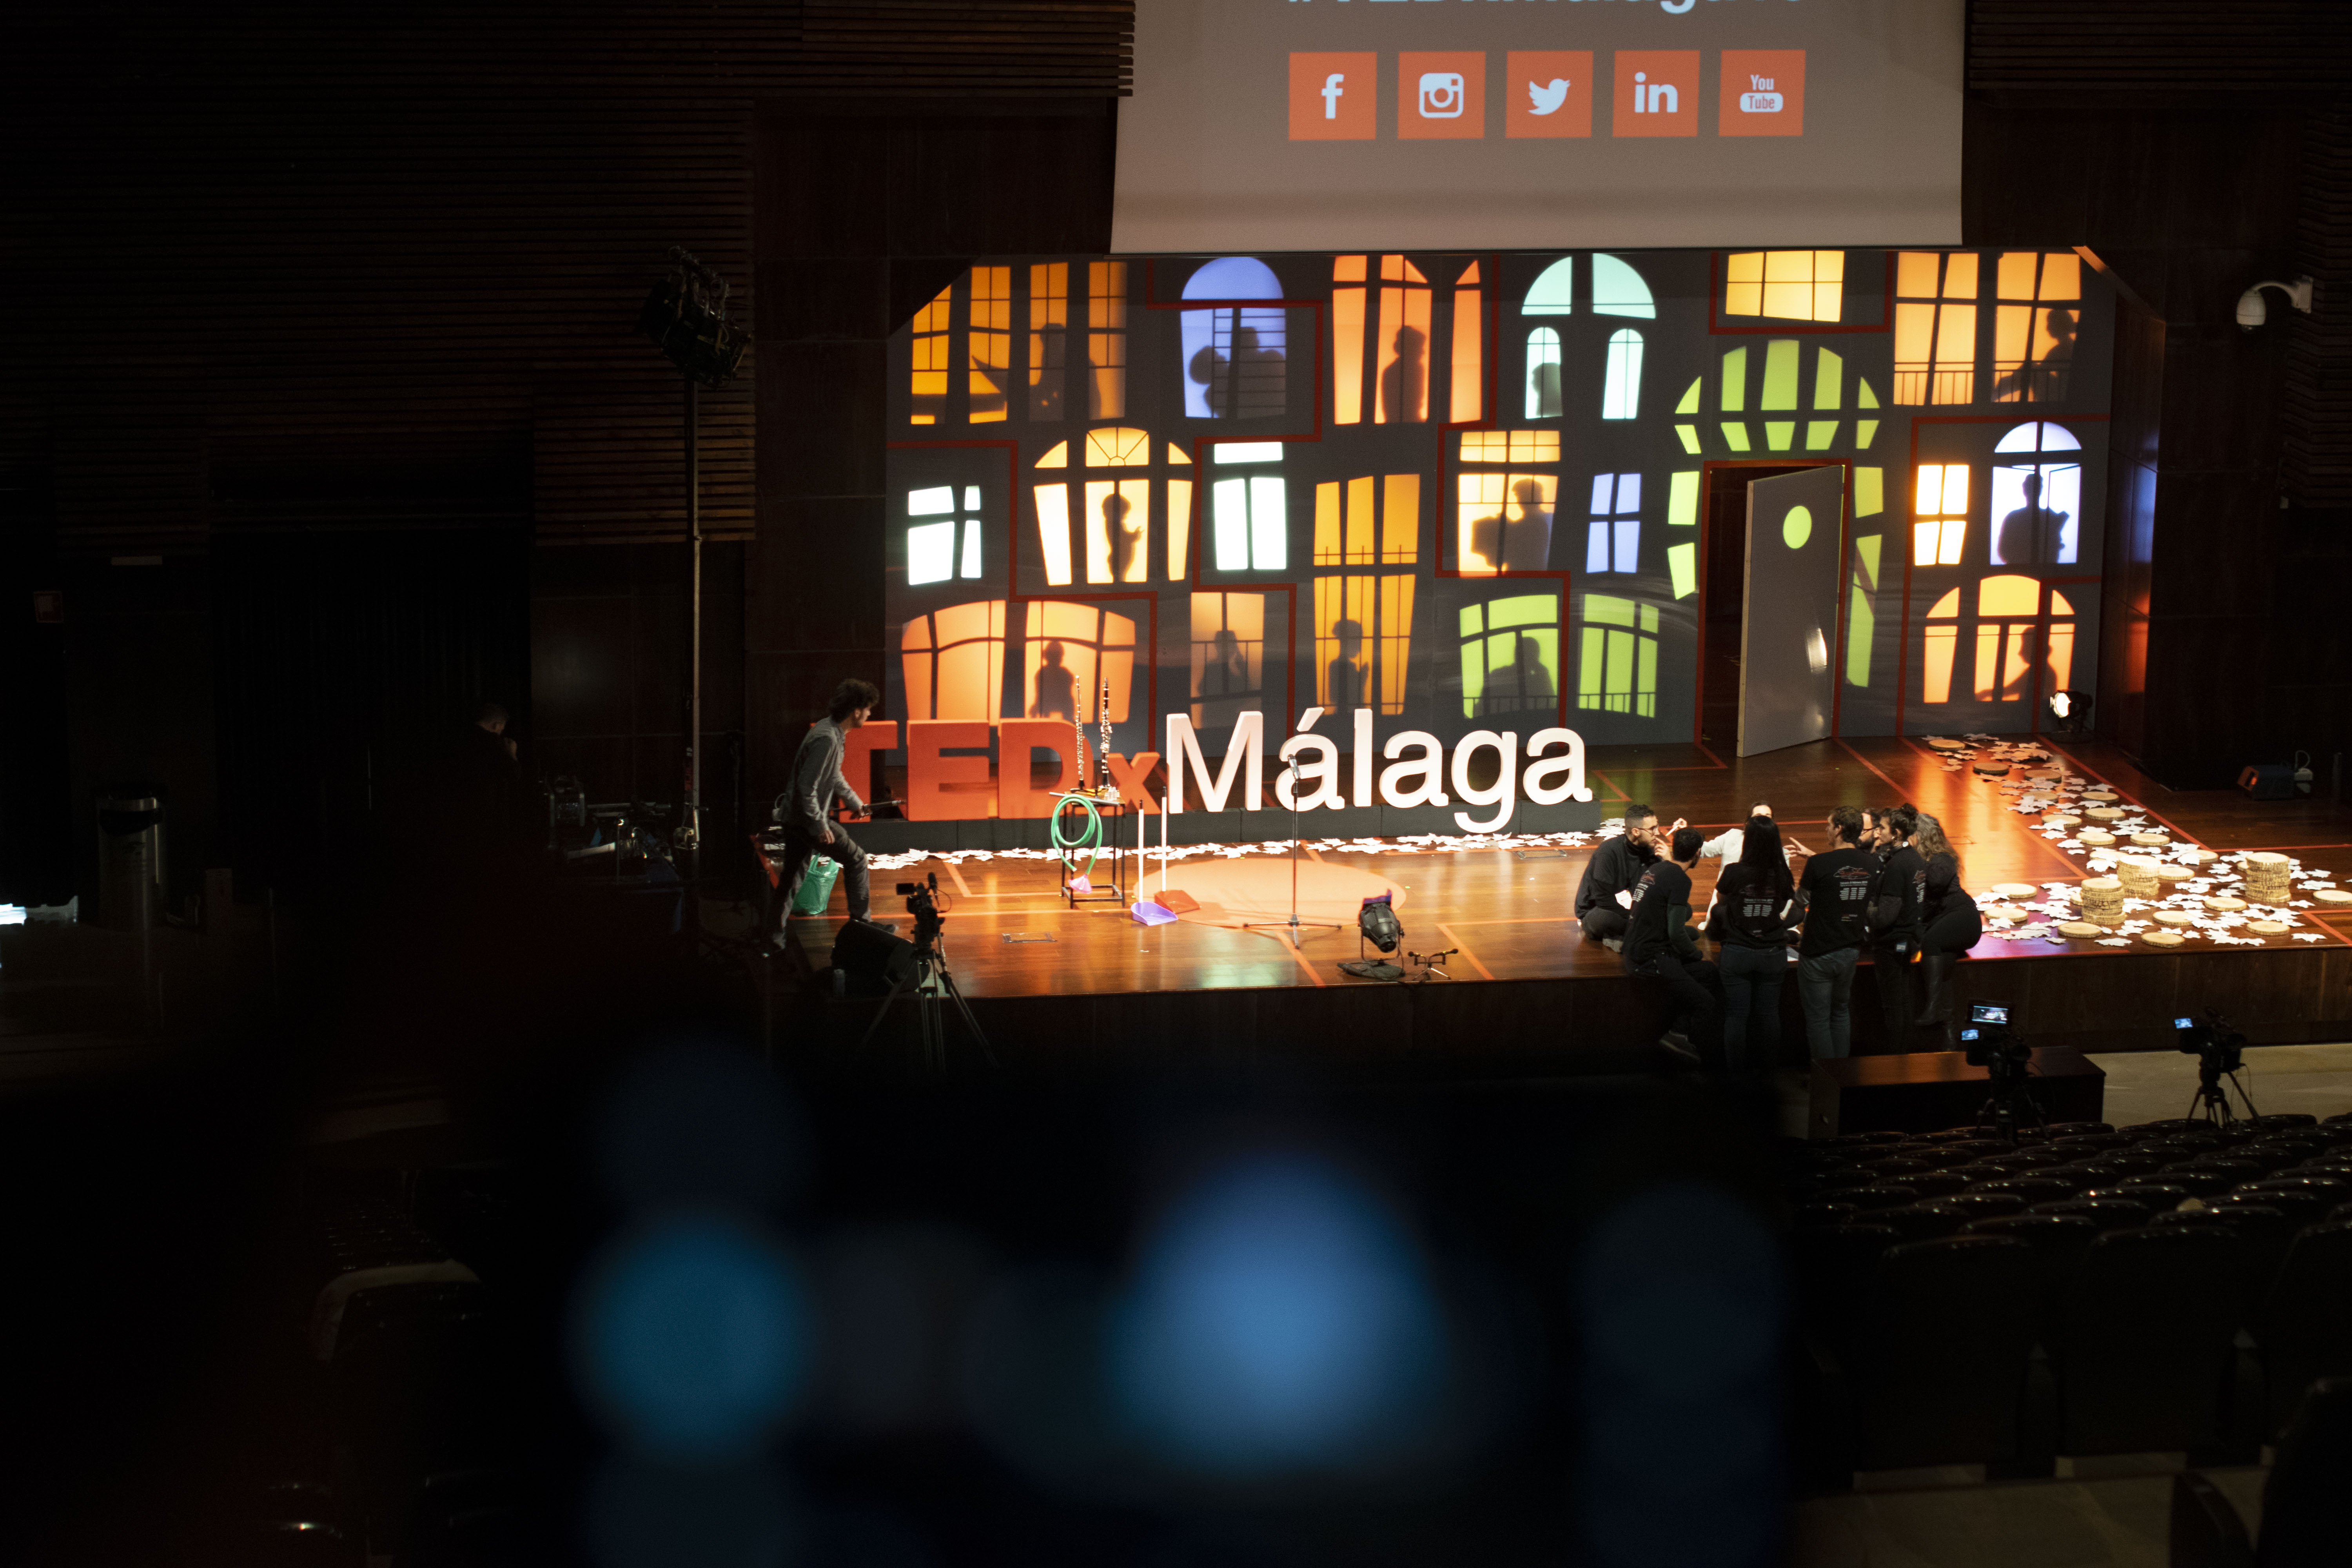 TEDxMálaga 2019